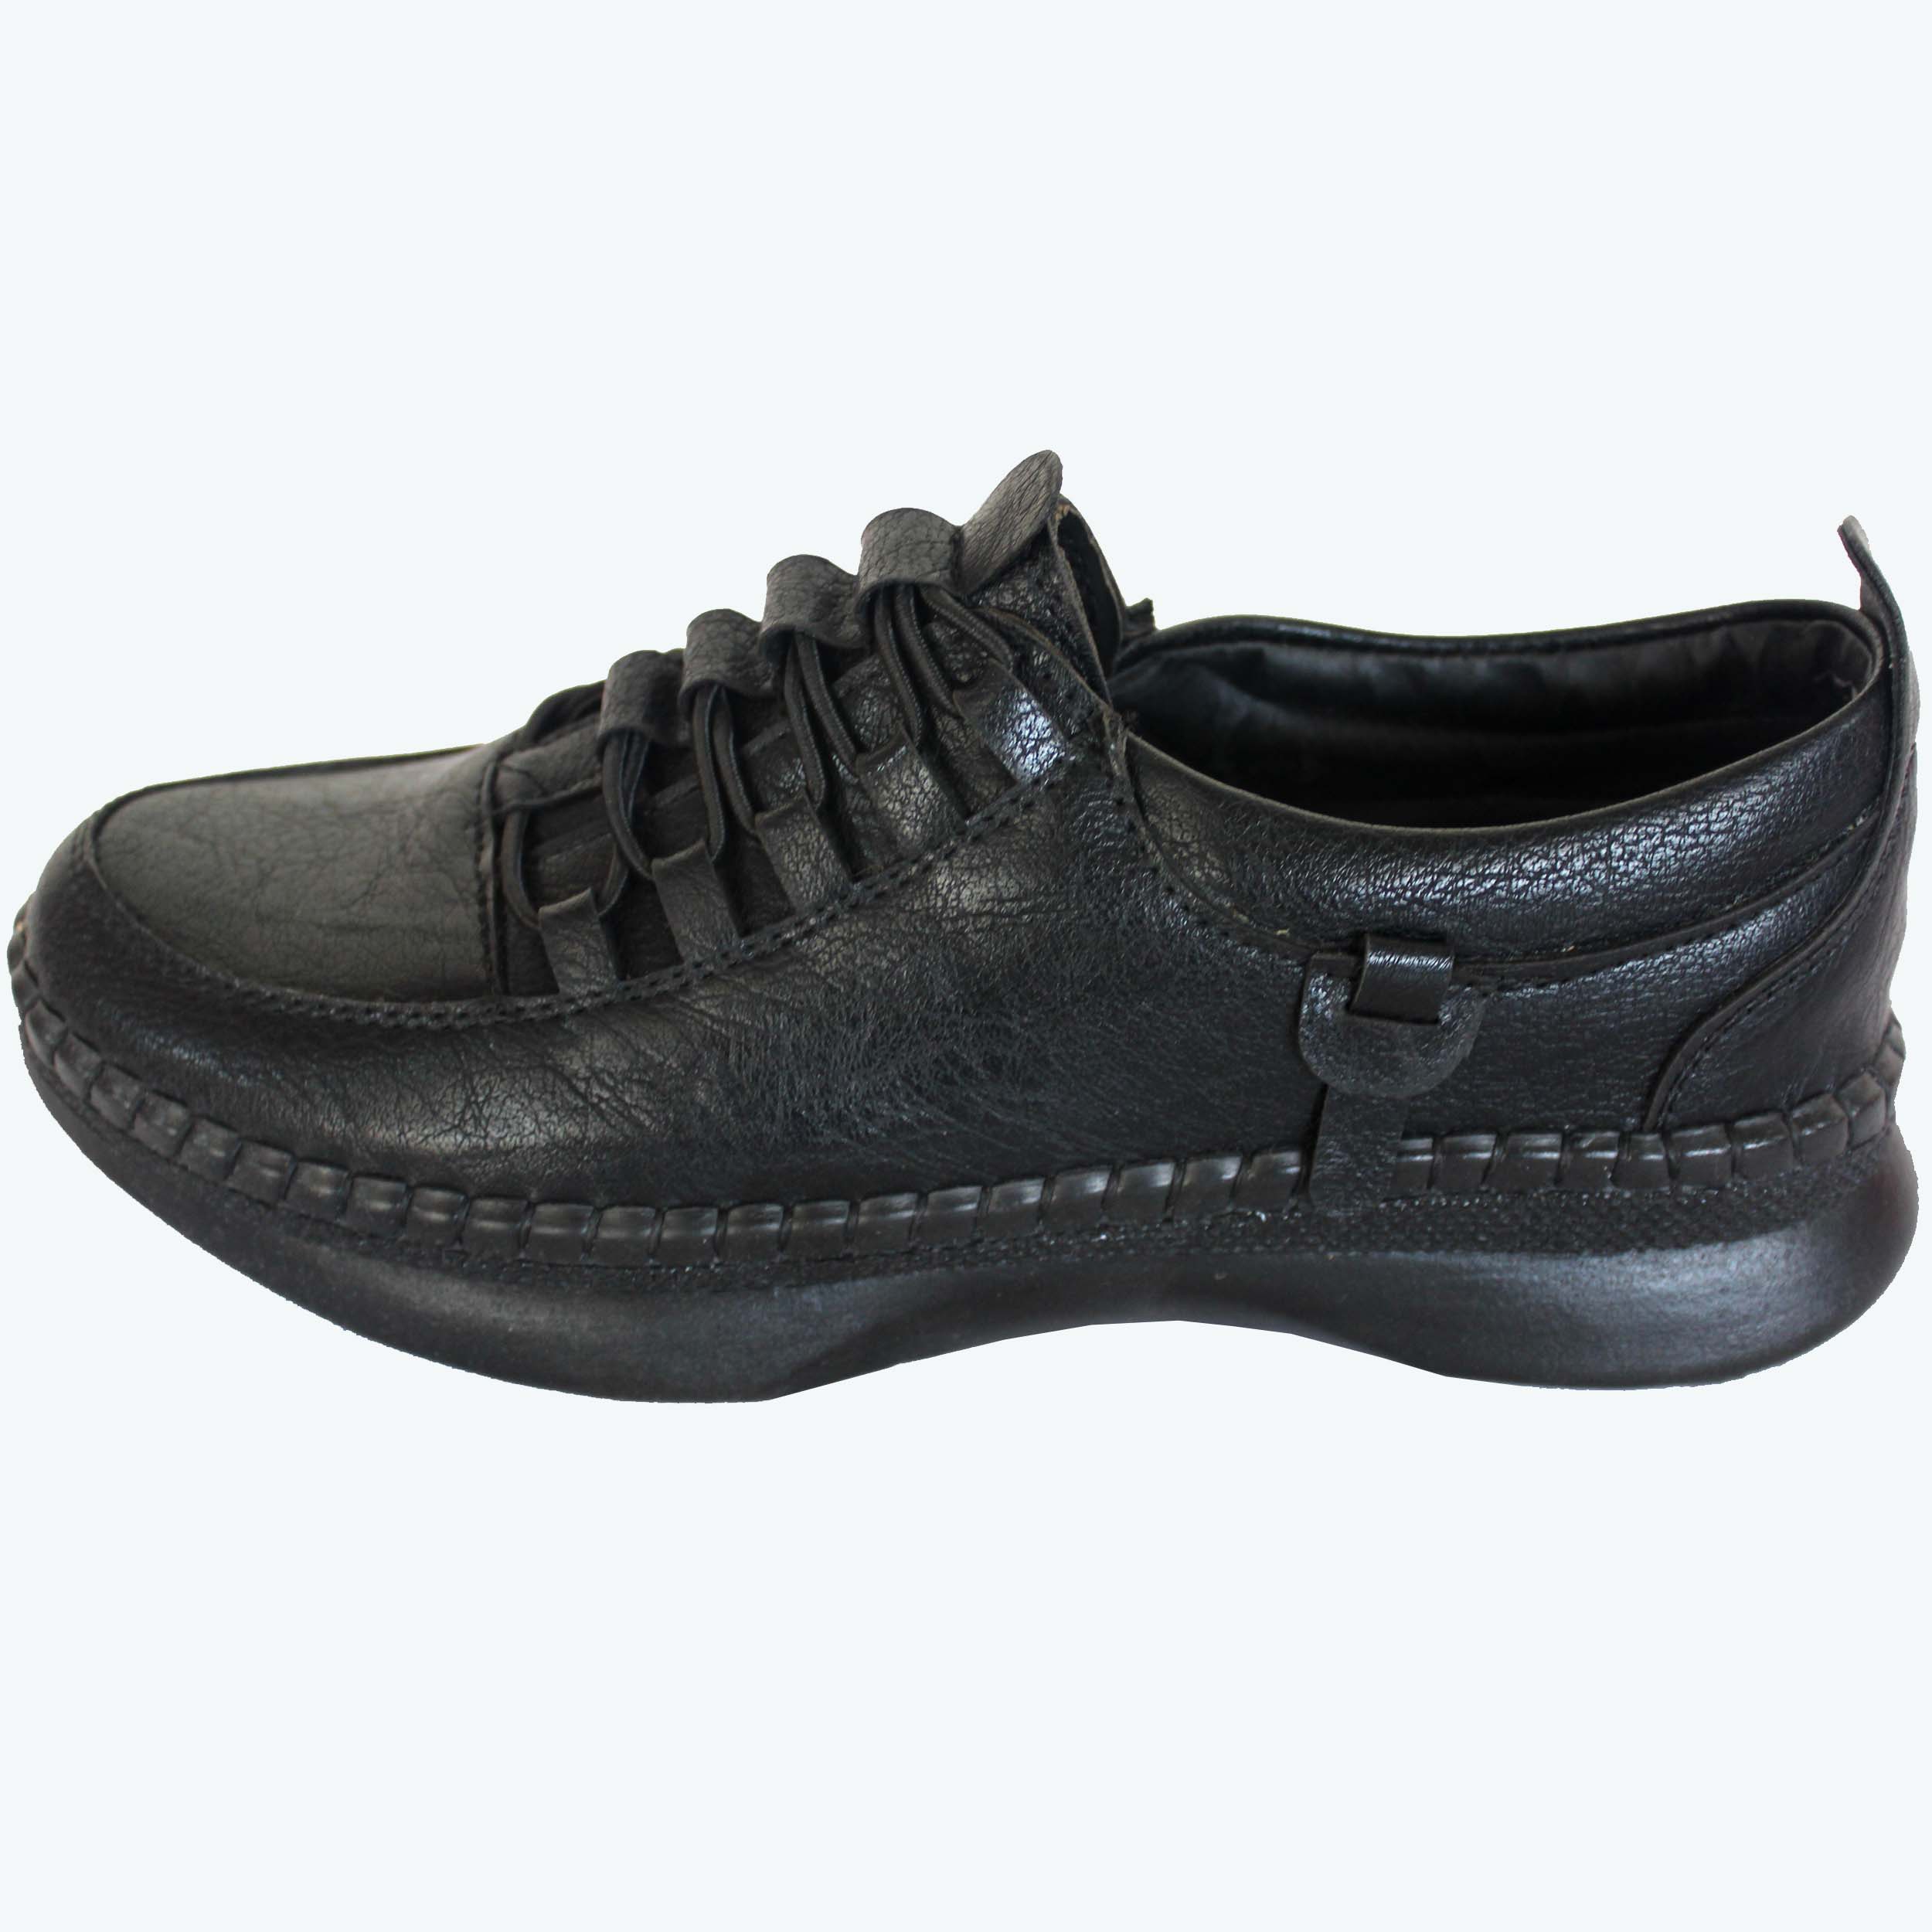 نکته خرید - قیمت روز کفش طبی زنانه نسیم مدل رزیتا کد NSM 2012 خرید